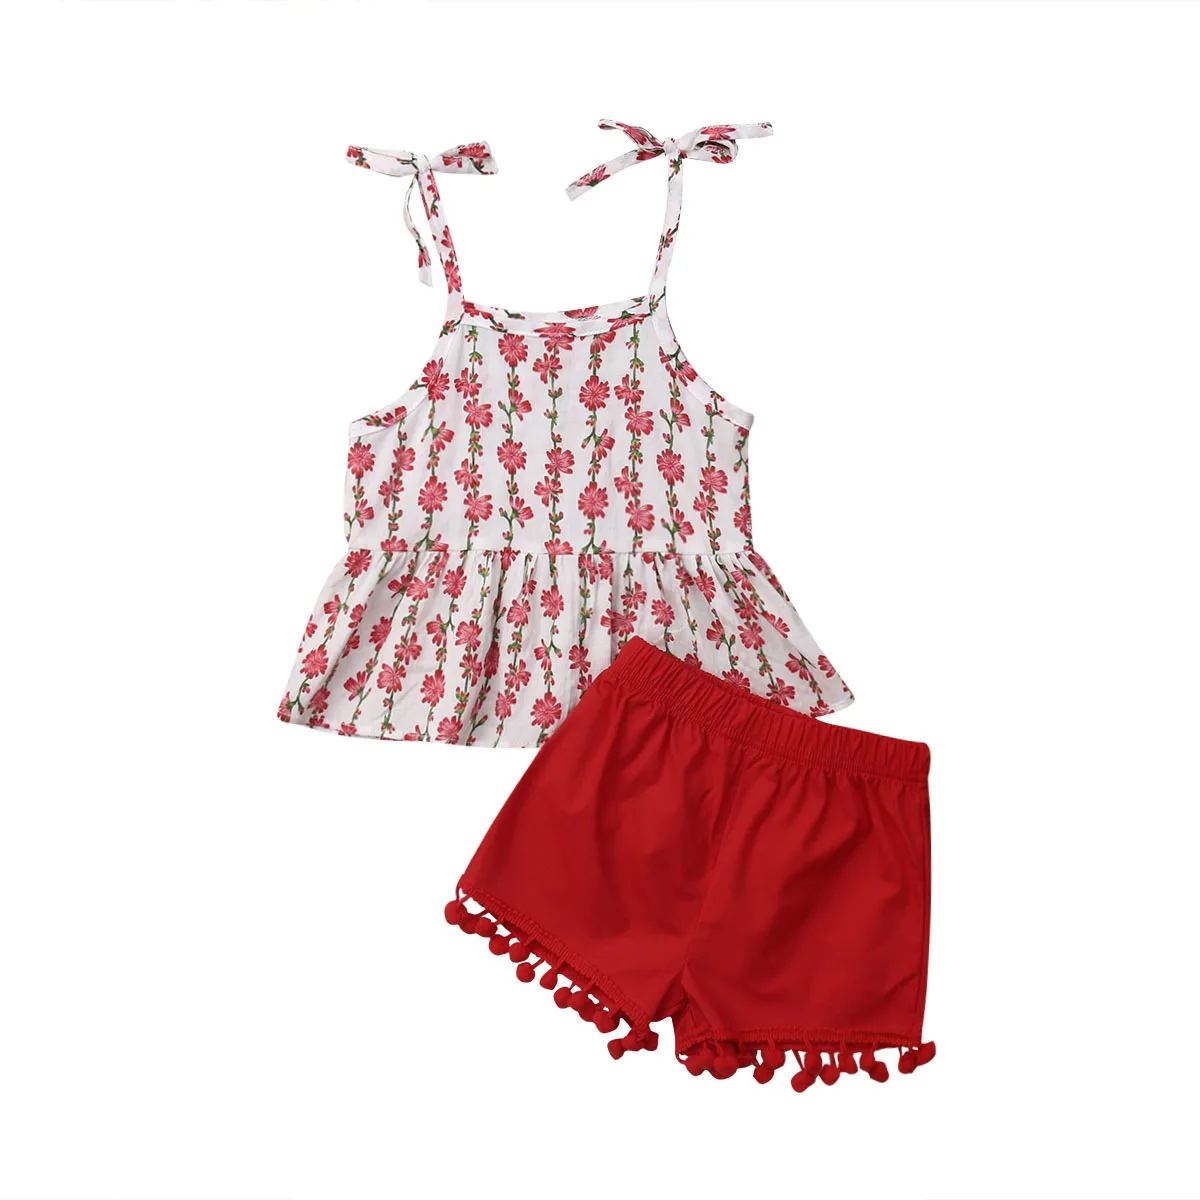 Фото 2 шт. футболка и шорты с фламинго для девочек|Комплекты одежды девочек| |